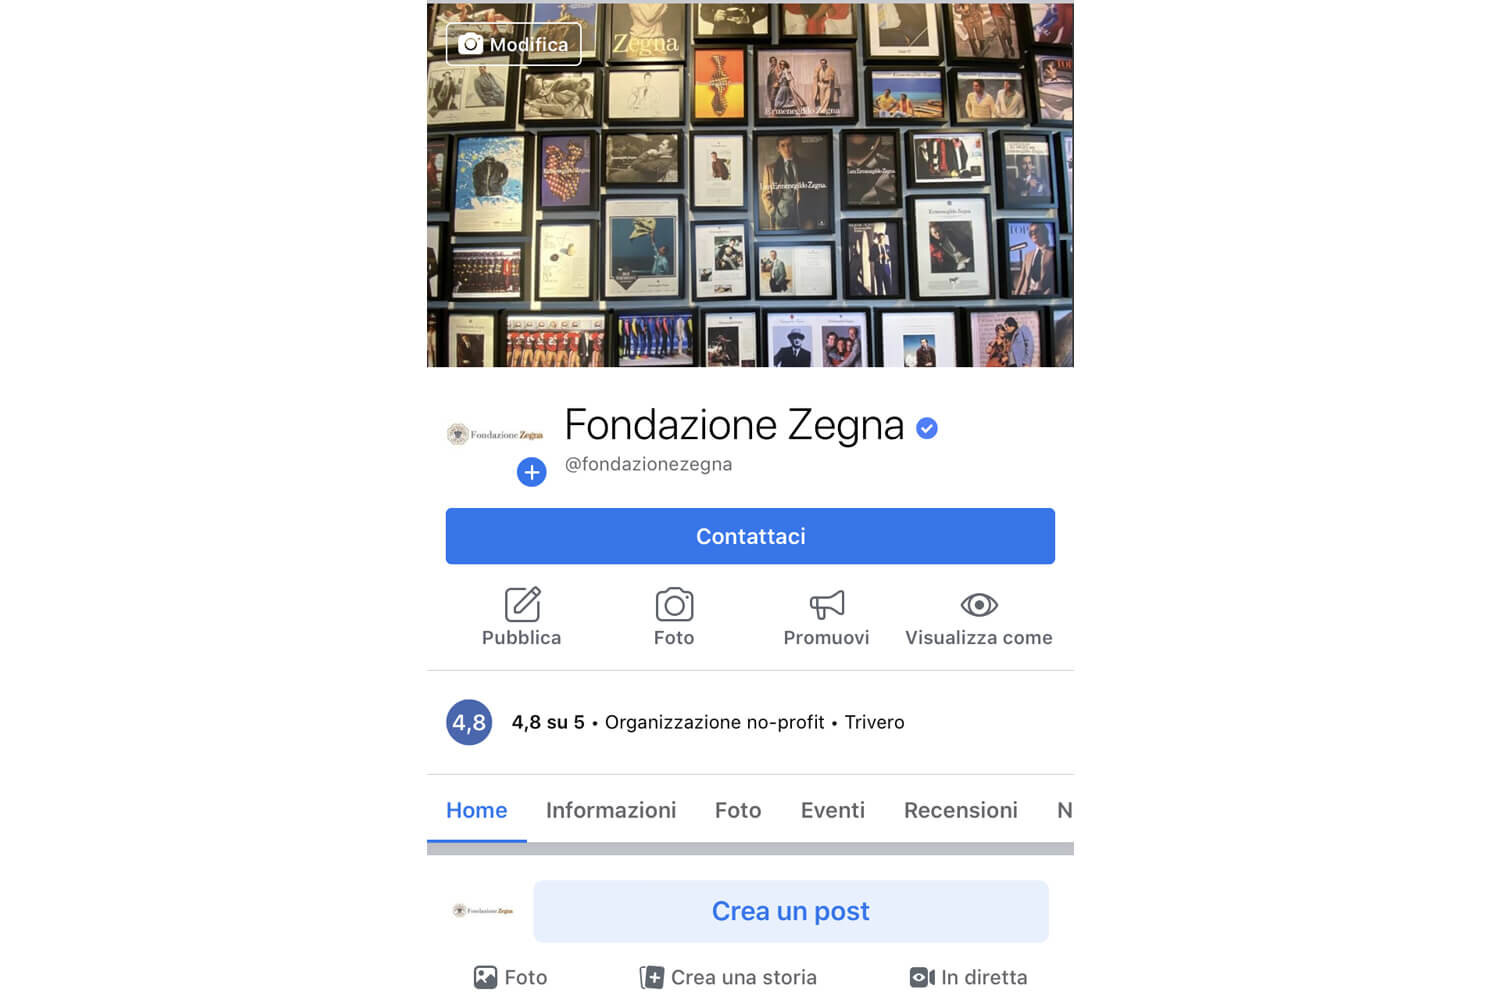 Fondazione_Zegna_FB-mobile.jpg